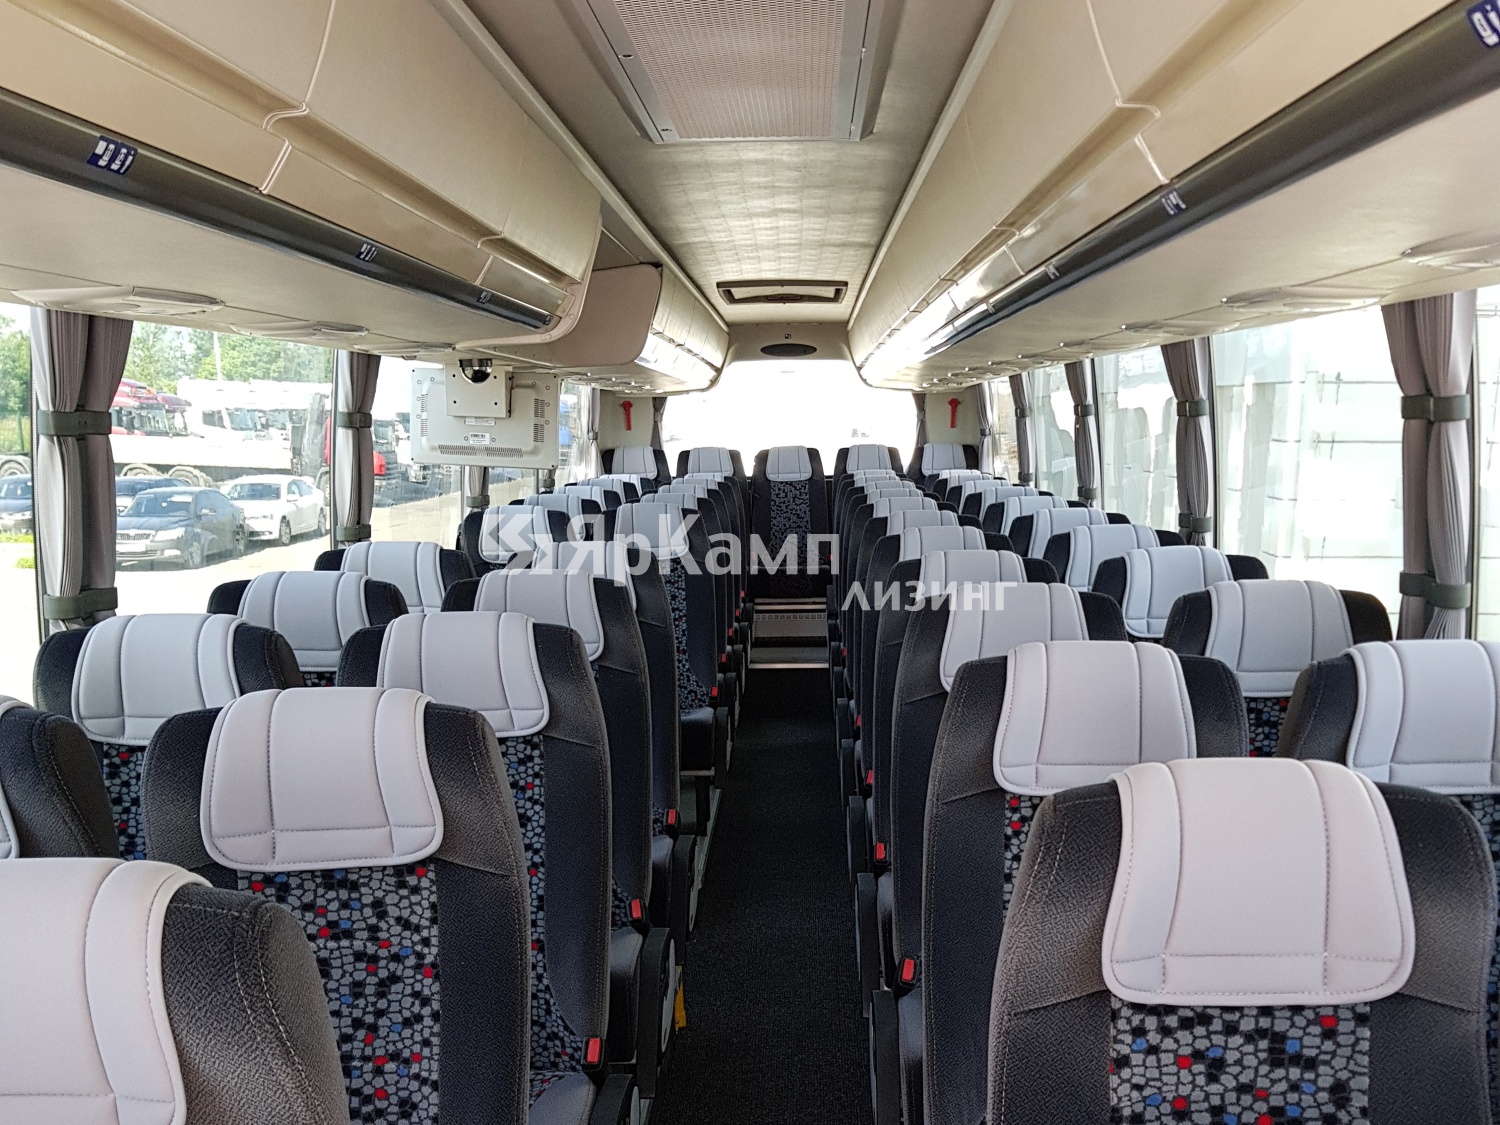 ЯрКамп-Лизинг произвел передачу в финансовую аренду туристического автобуса SCANIA Touring